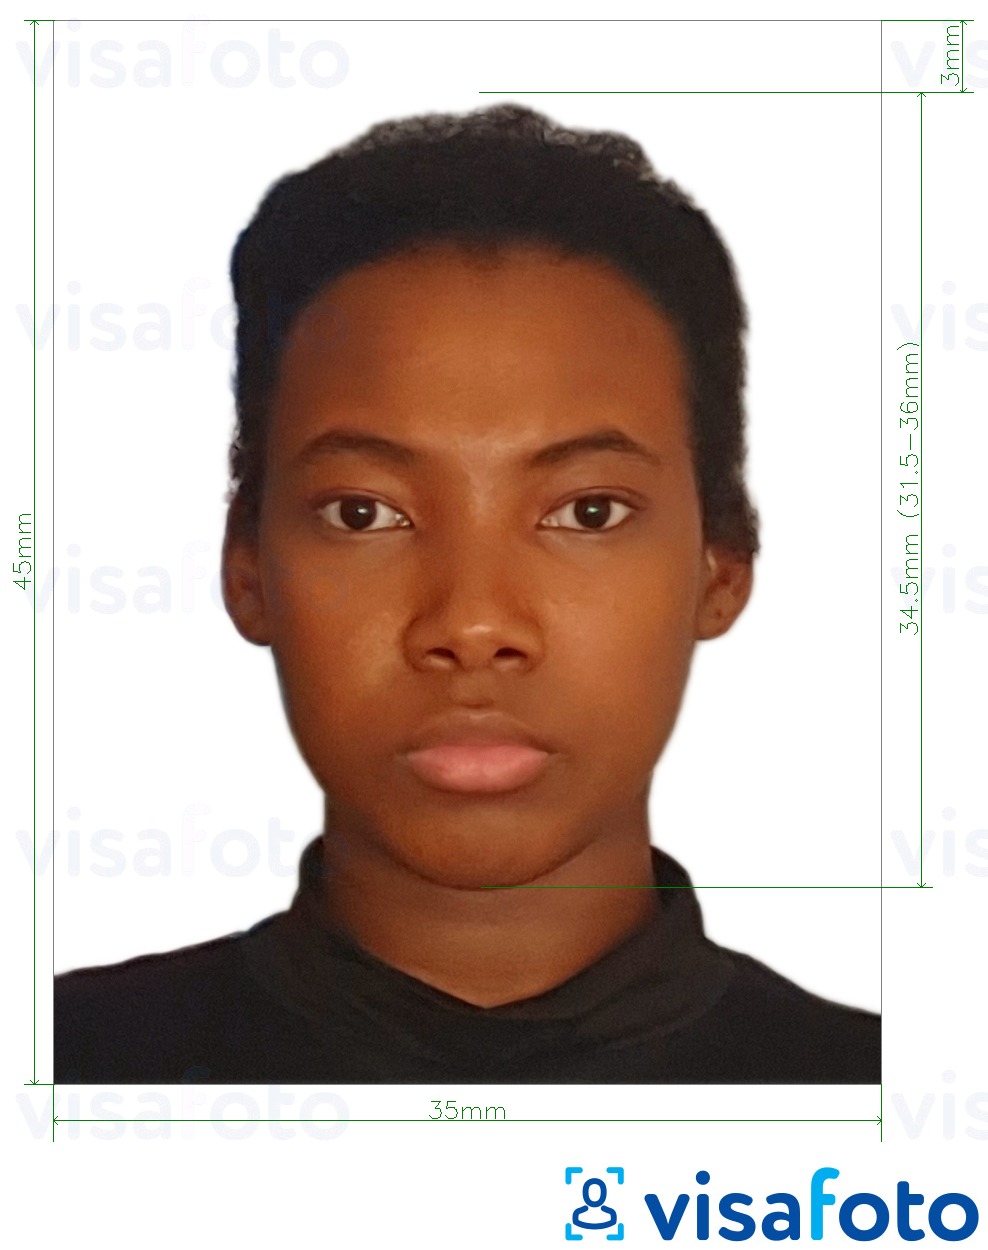 Ejemplo de foto para Visa de Burkina Faso 4.5x3.5 cm (45x35 mm) con la especificación del tamaño exacto